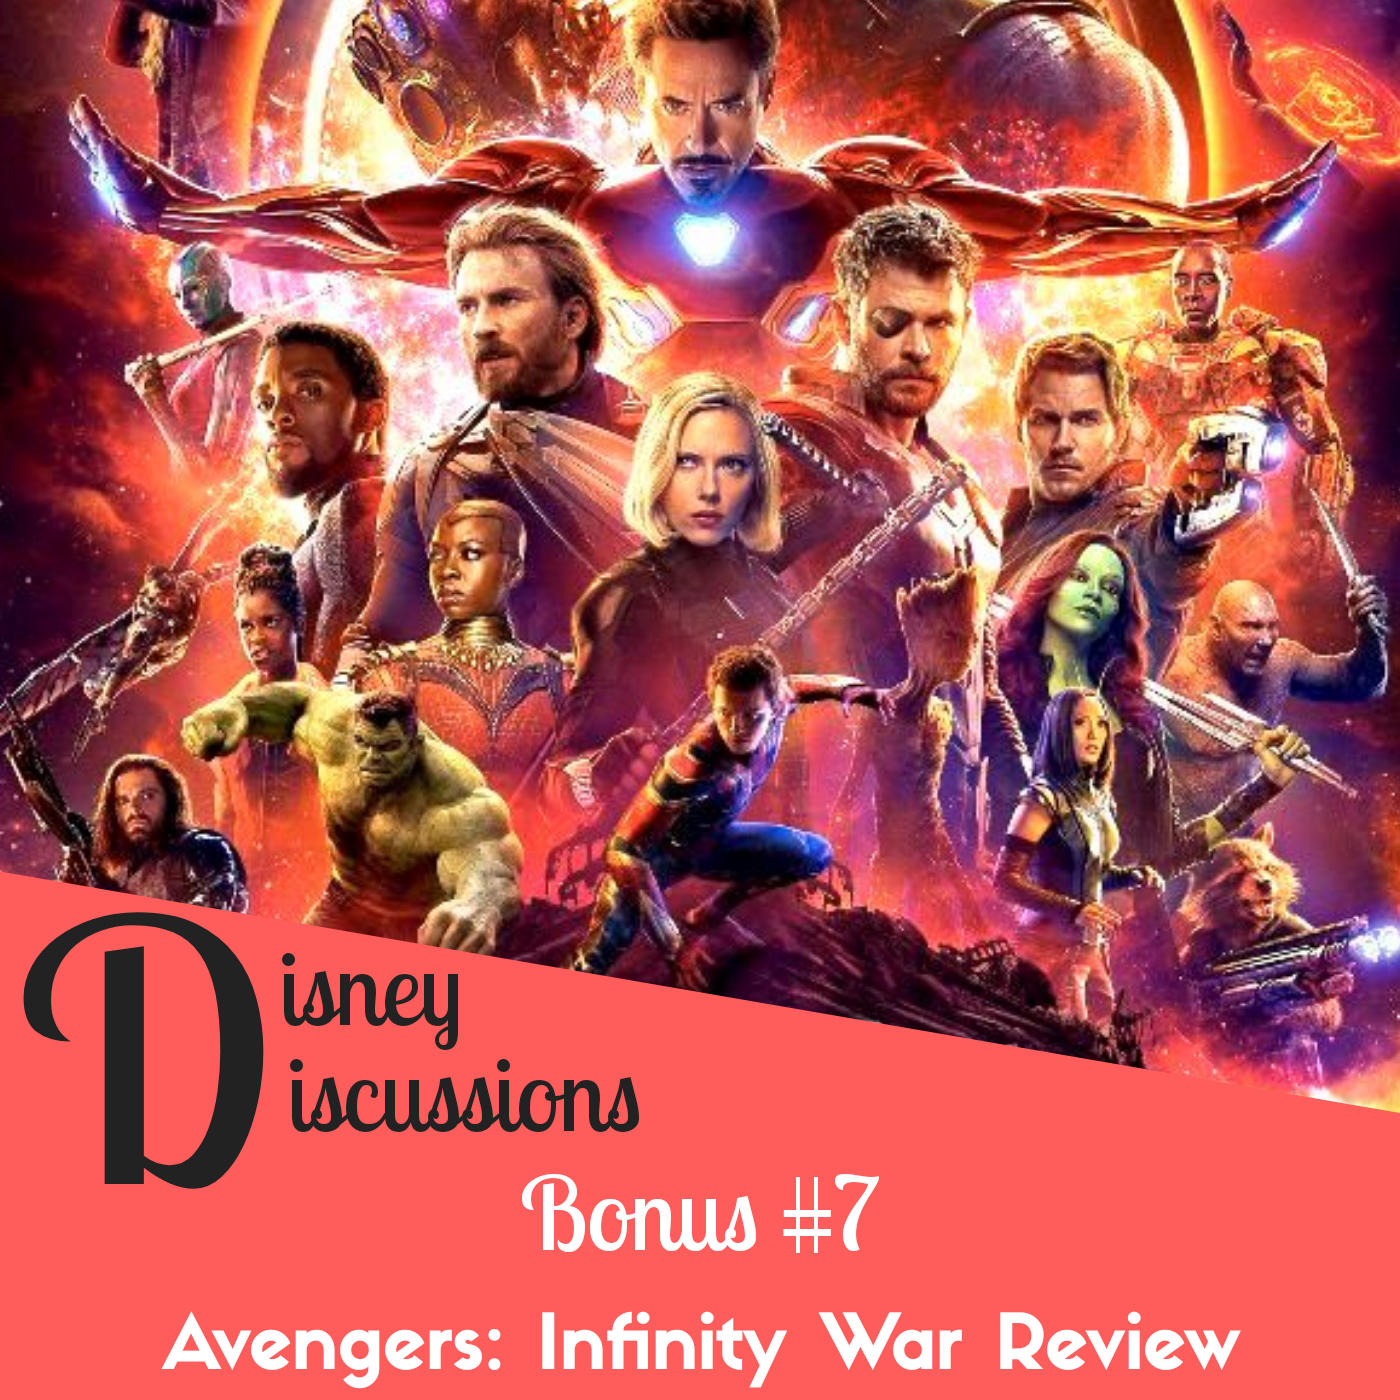 Bonus: Avengers Infinity War Review - SPOILERS!